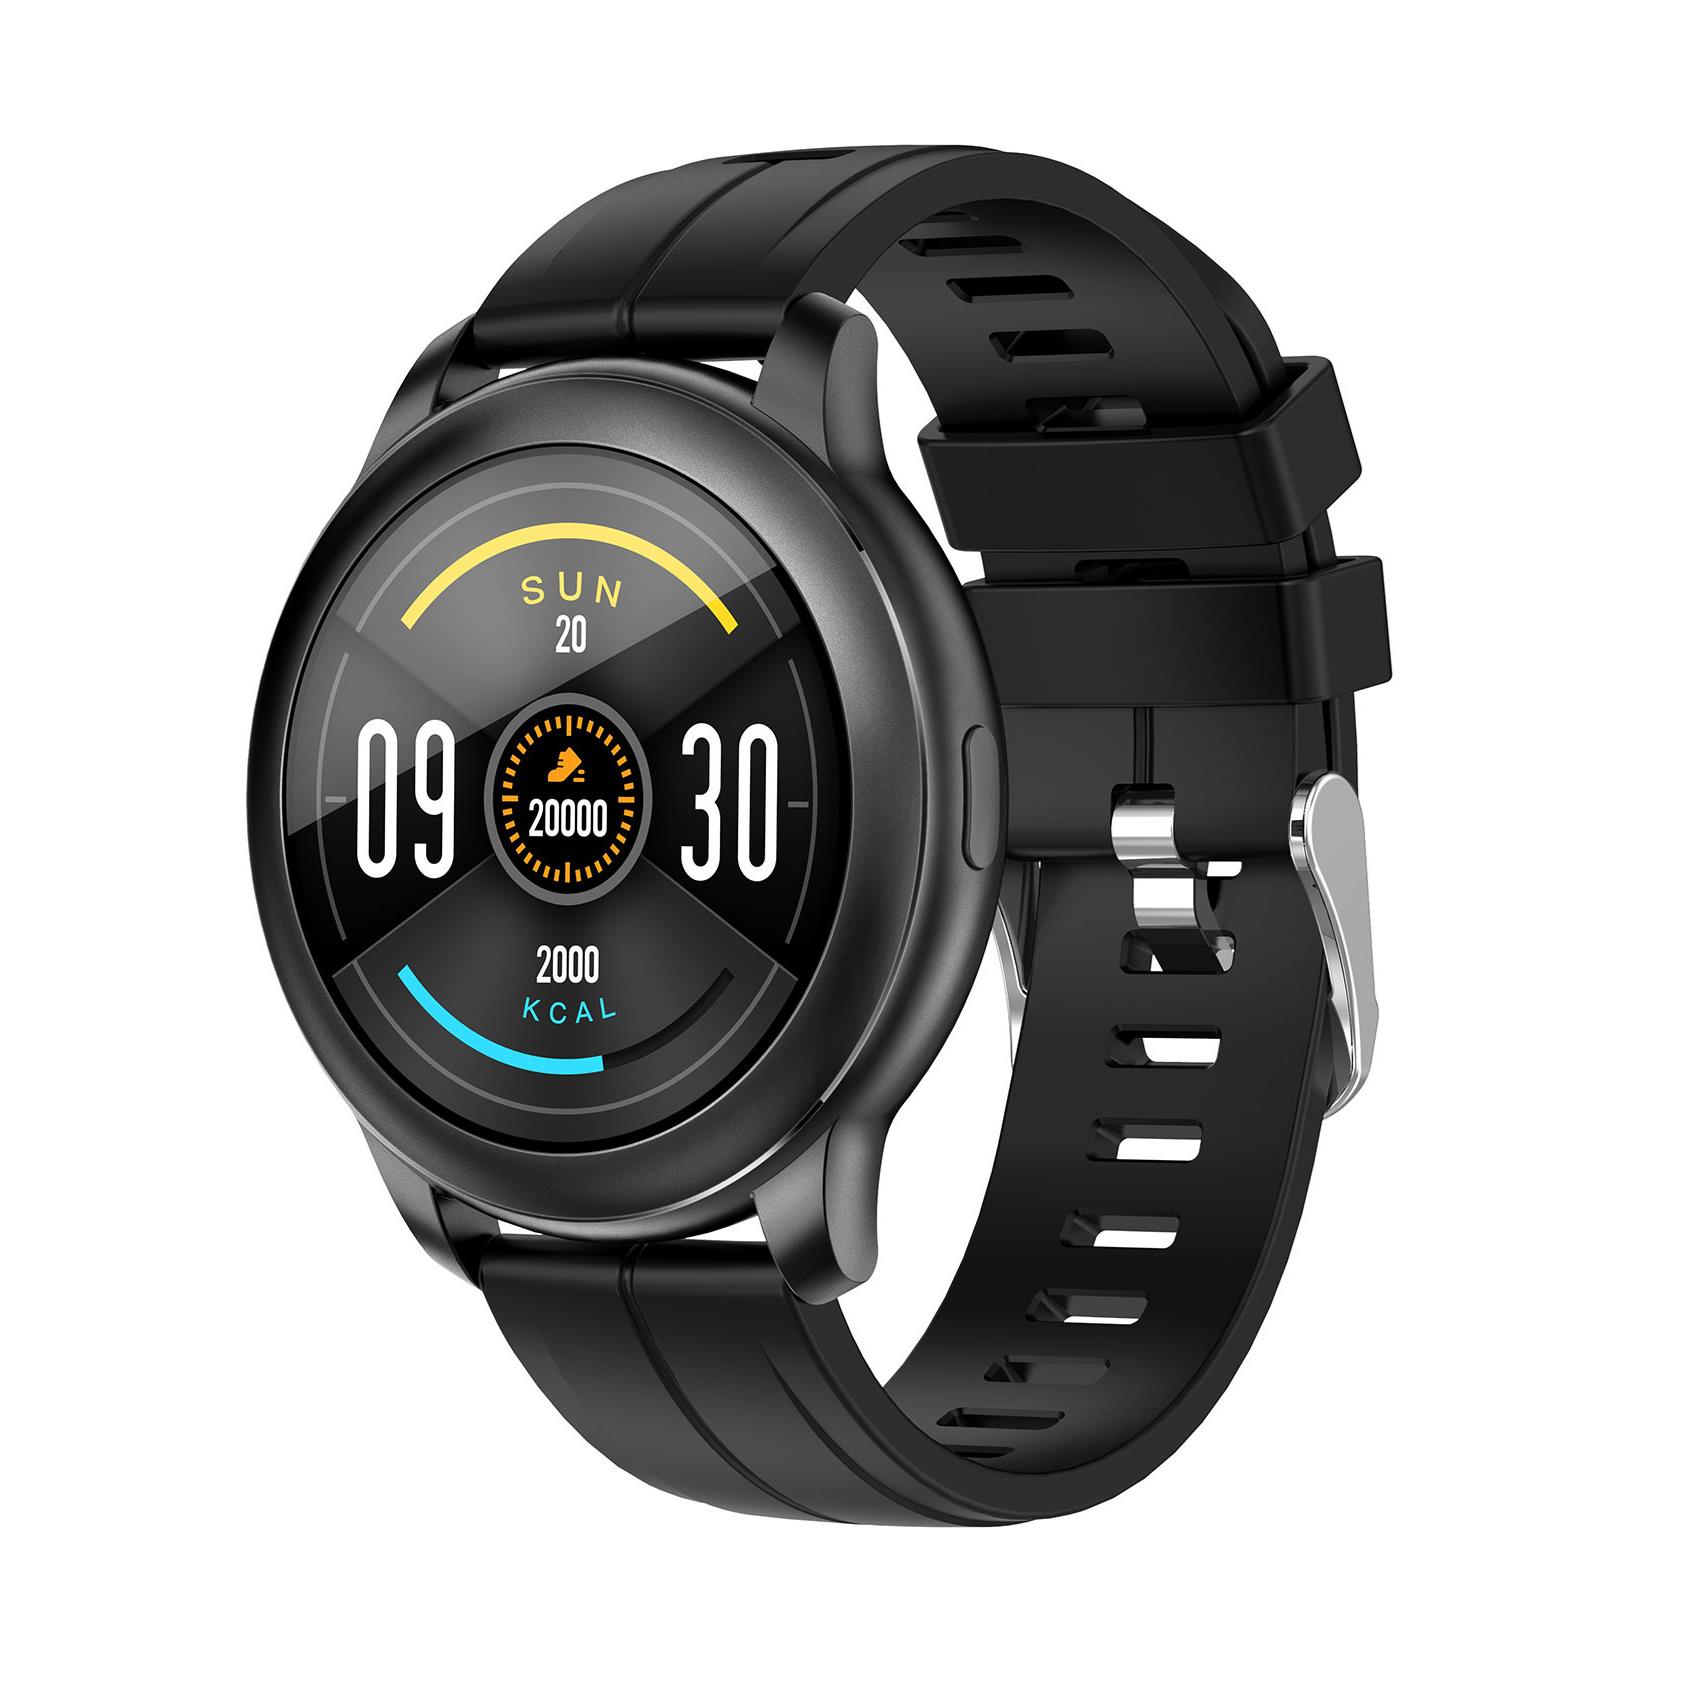 Celly presenta quattro nuovi smartwatch e fitness tracker